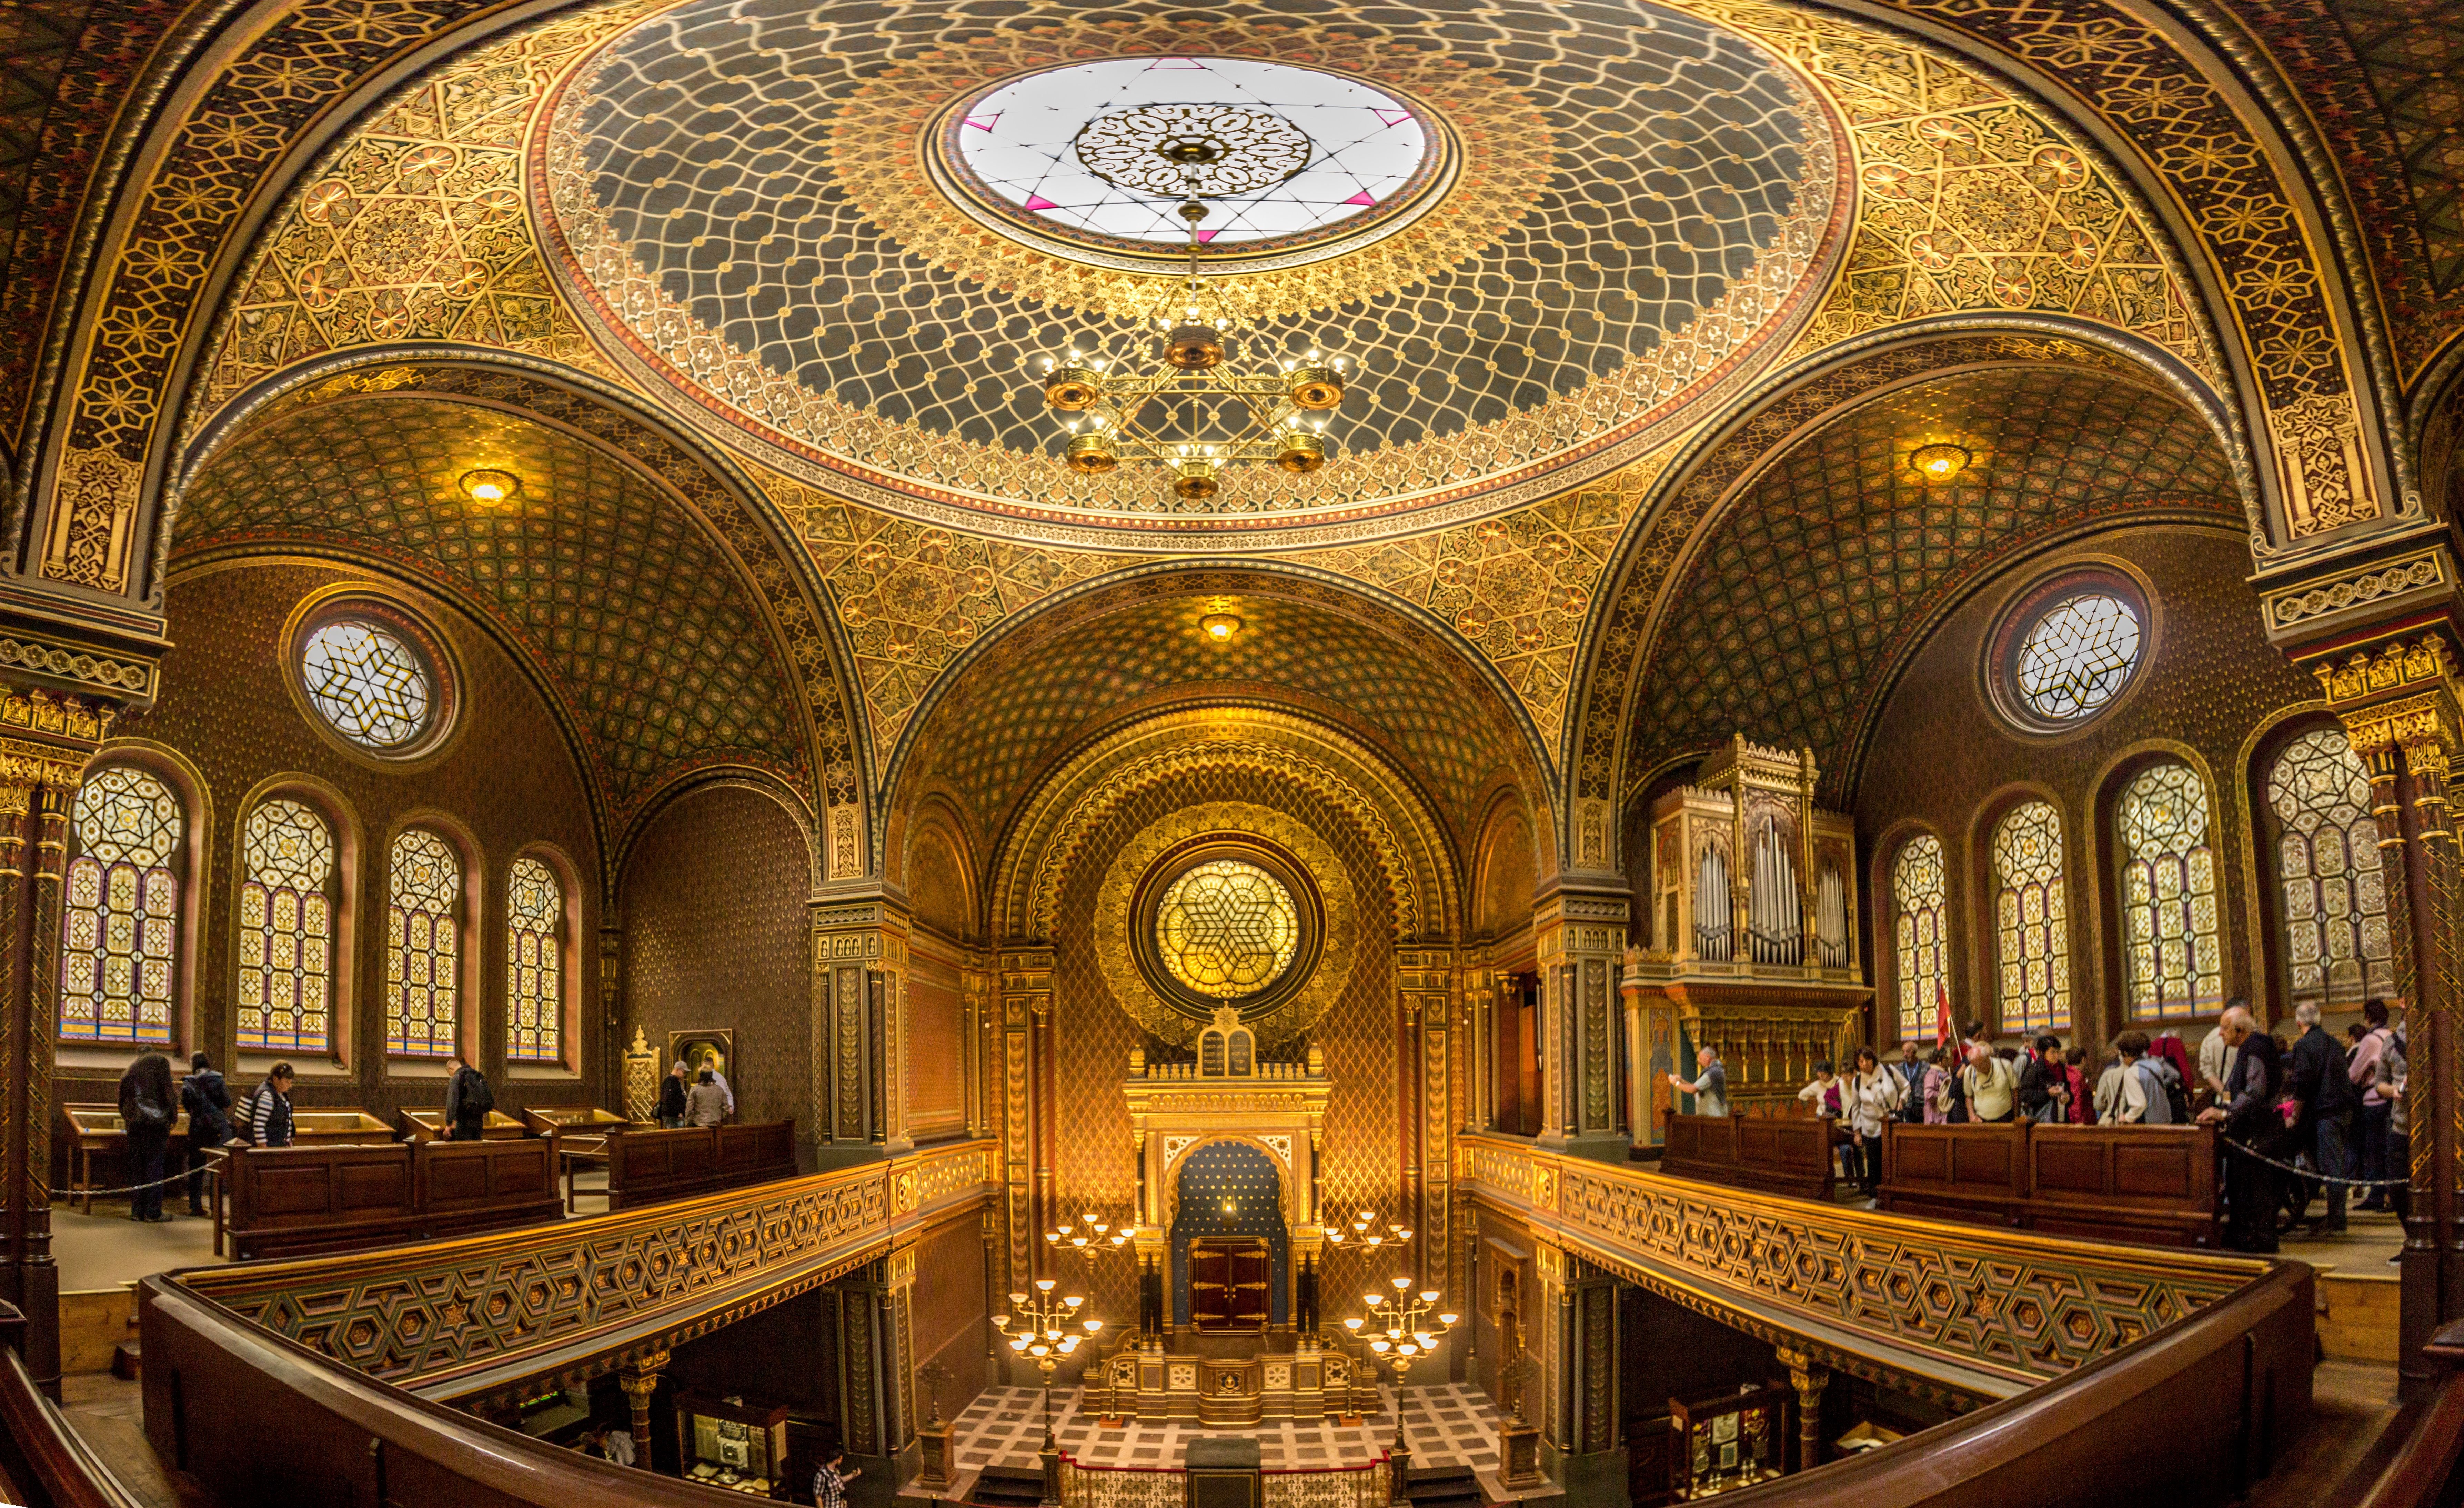 Sinagoga Espanhola de Praga: considera da mais linda da Europa